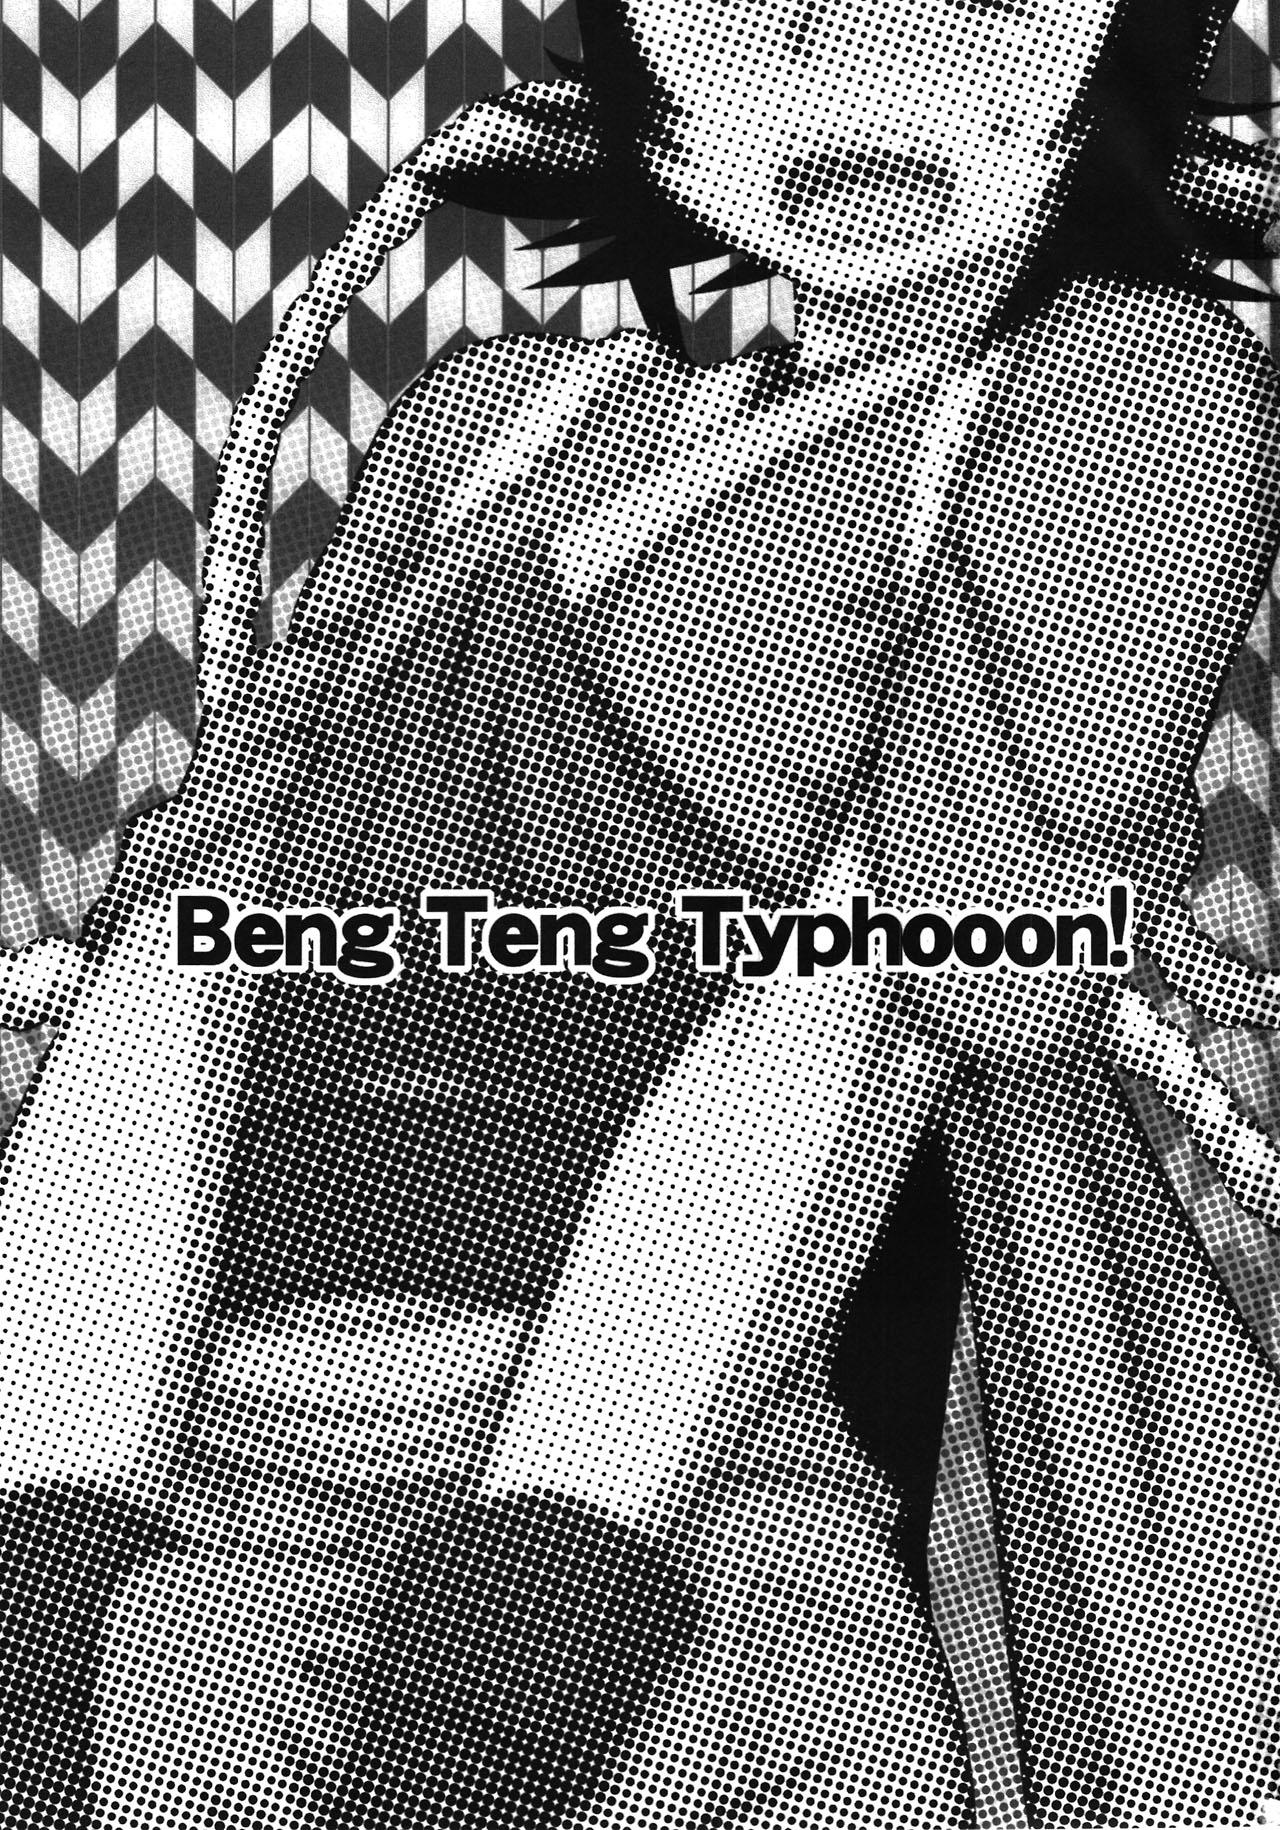 Cut Beng Teng Typhooon! - Rurouni kenshin Chudai - Page 3